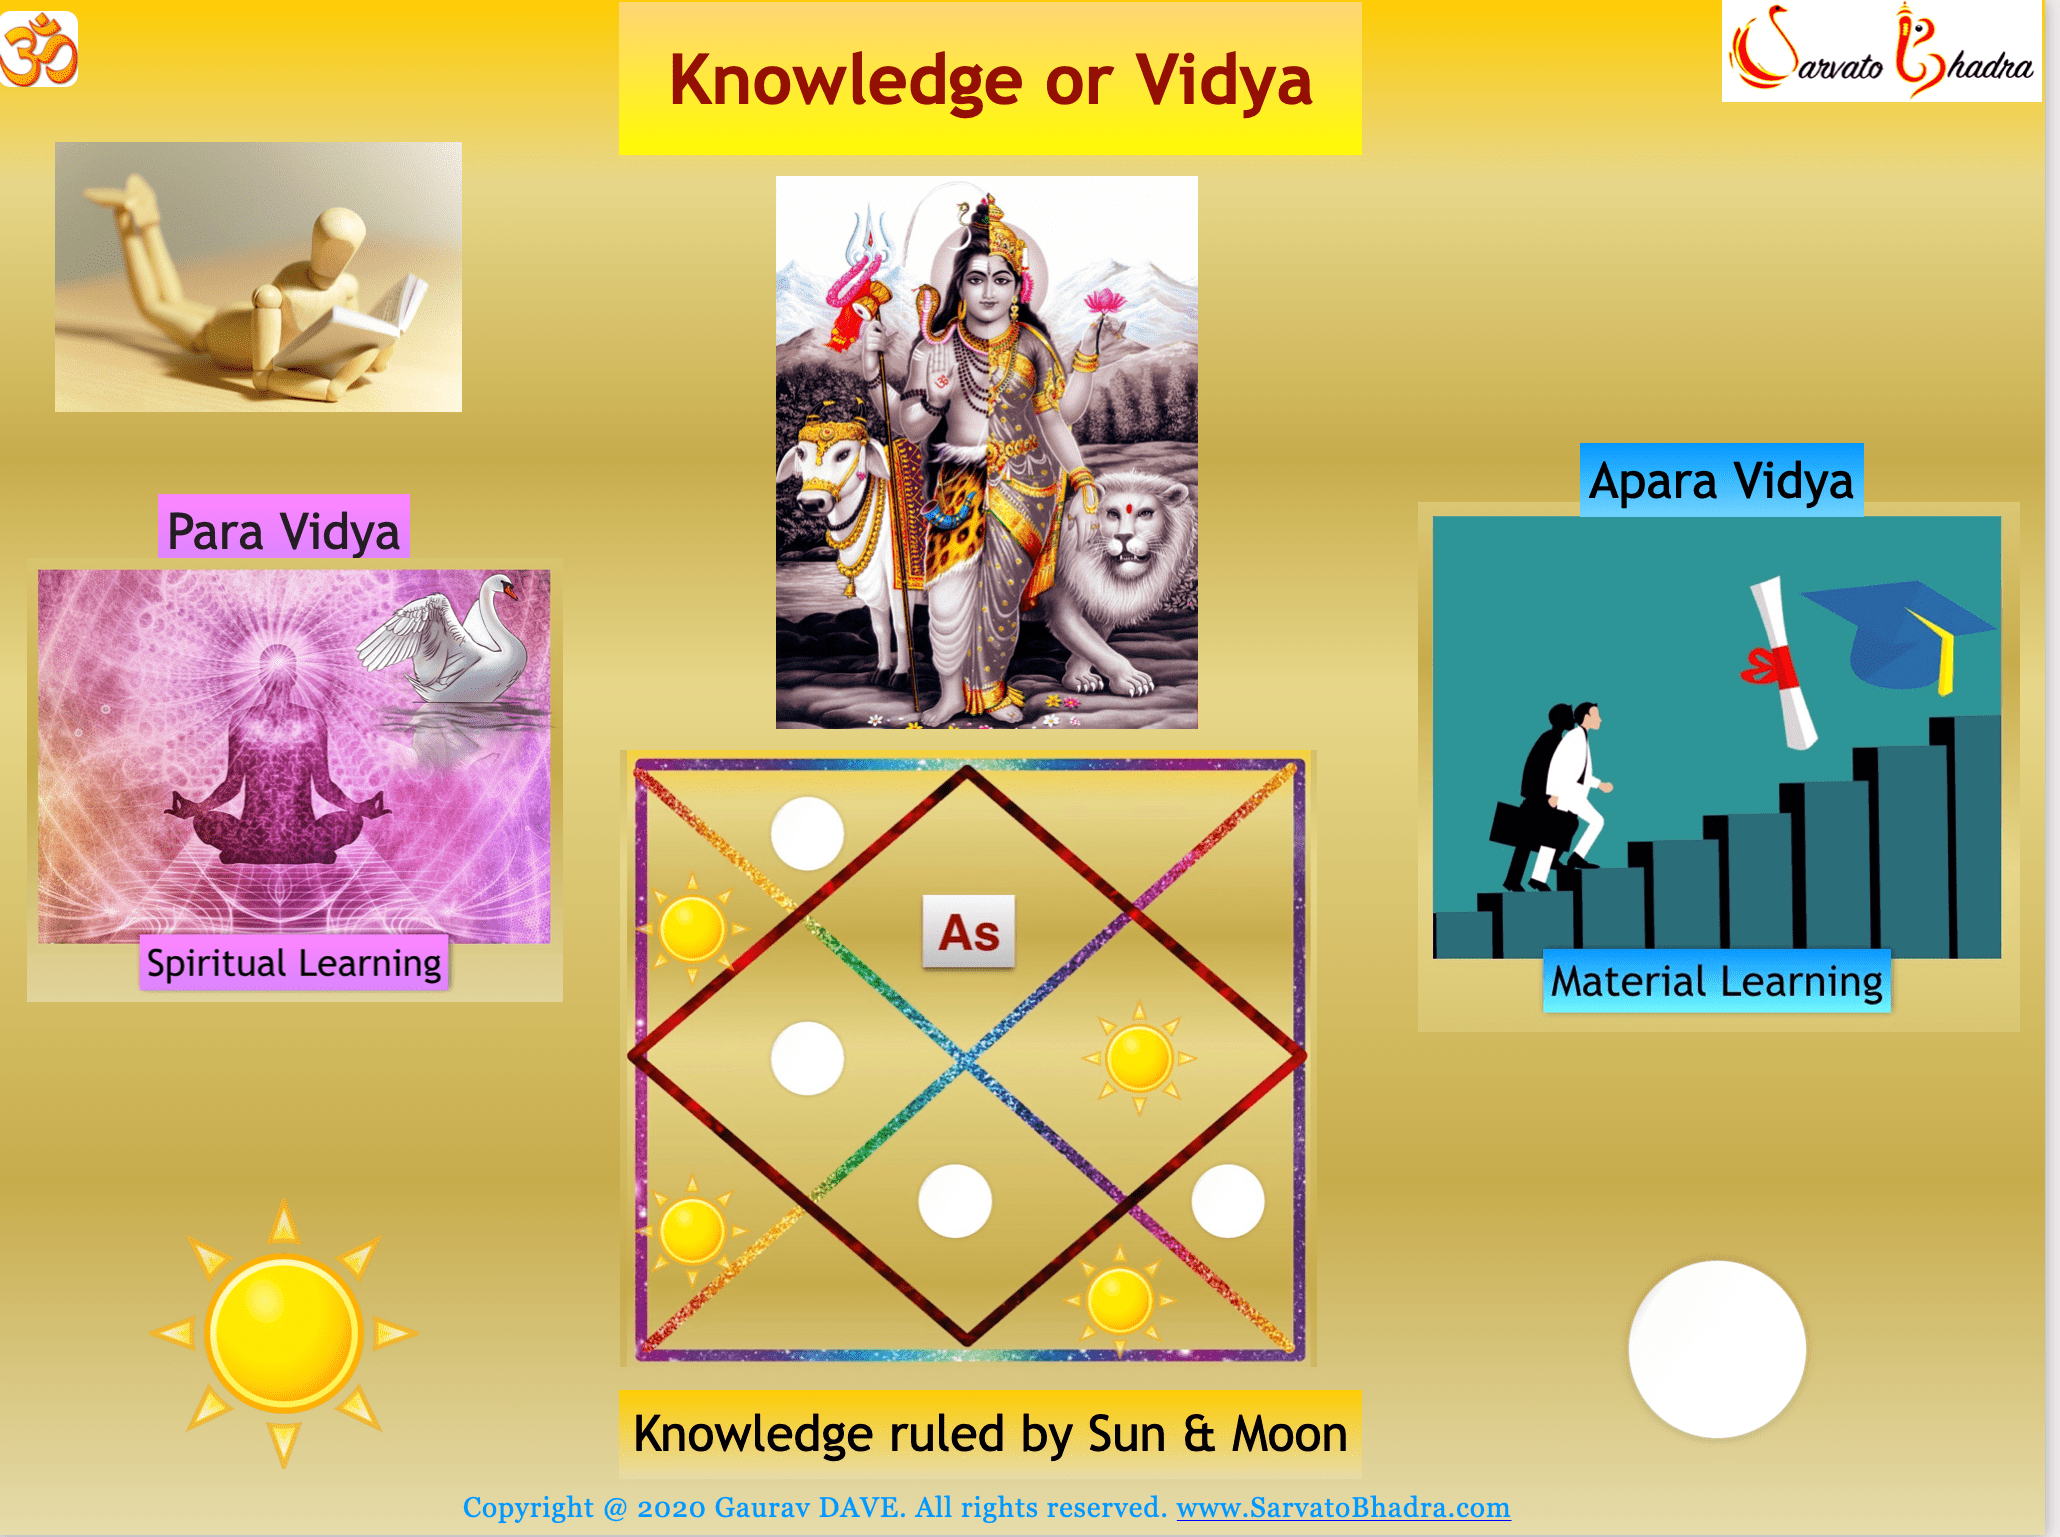 Description of Paraa & Aparaa Vidya